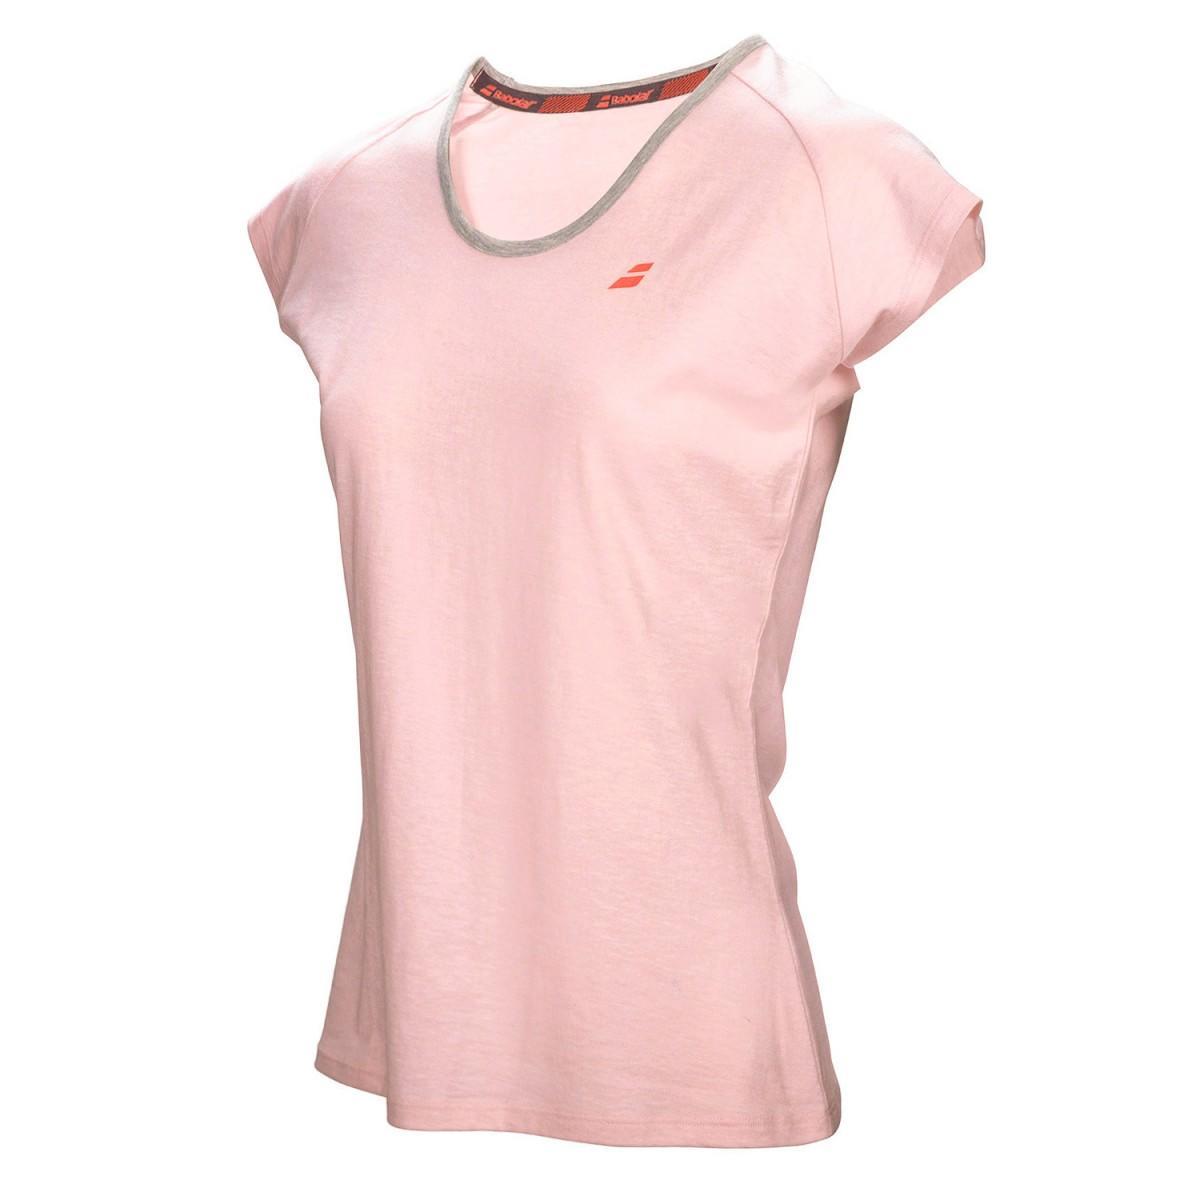 Теннисная футболка детская Babolat Core Tee Girl light pink